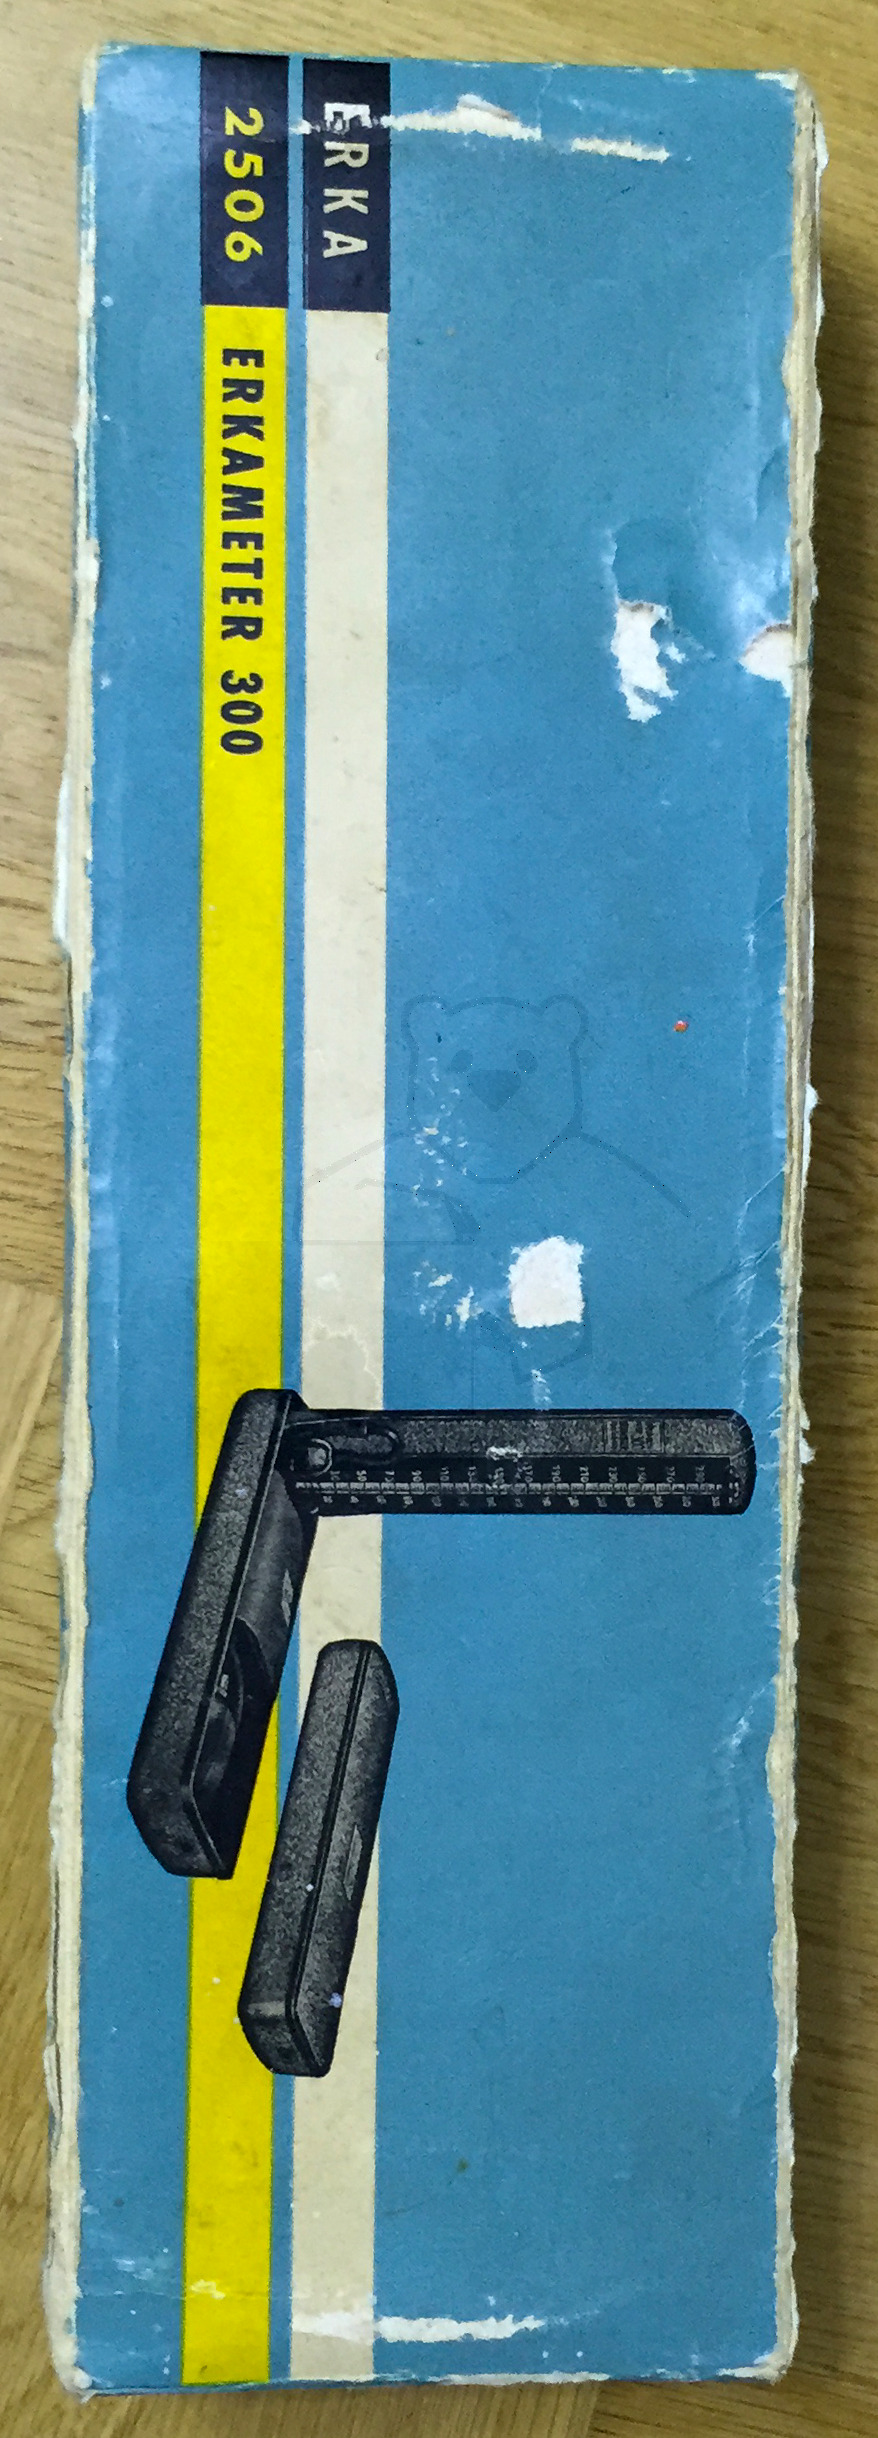 Erka 300 Blutdruckmesser (Sphygmomanometer), Originalzustand, 1960'er Jahre, Originalverpackung